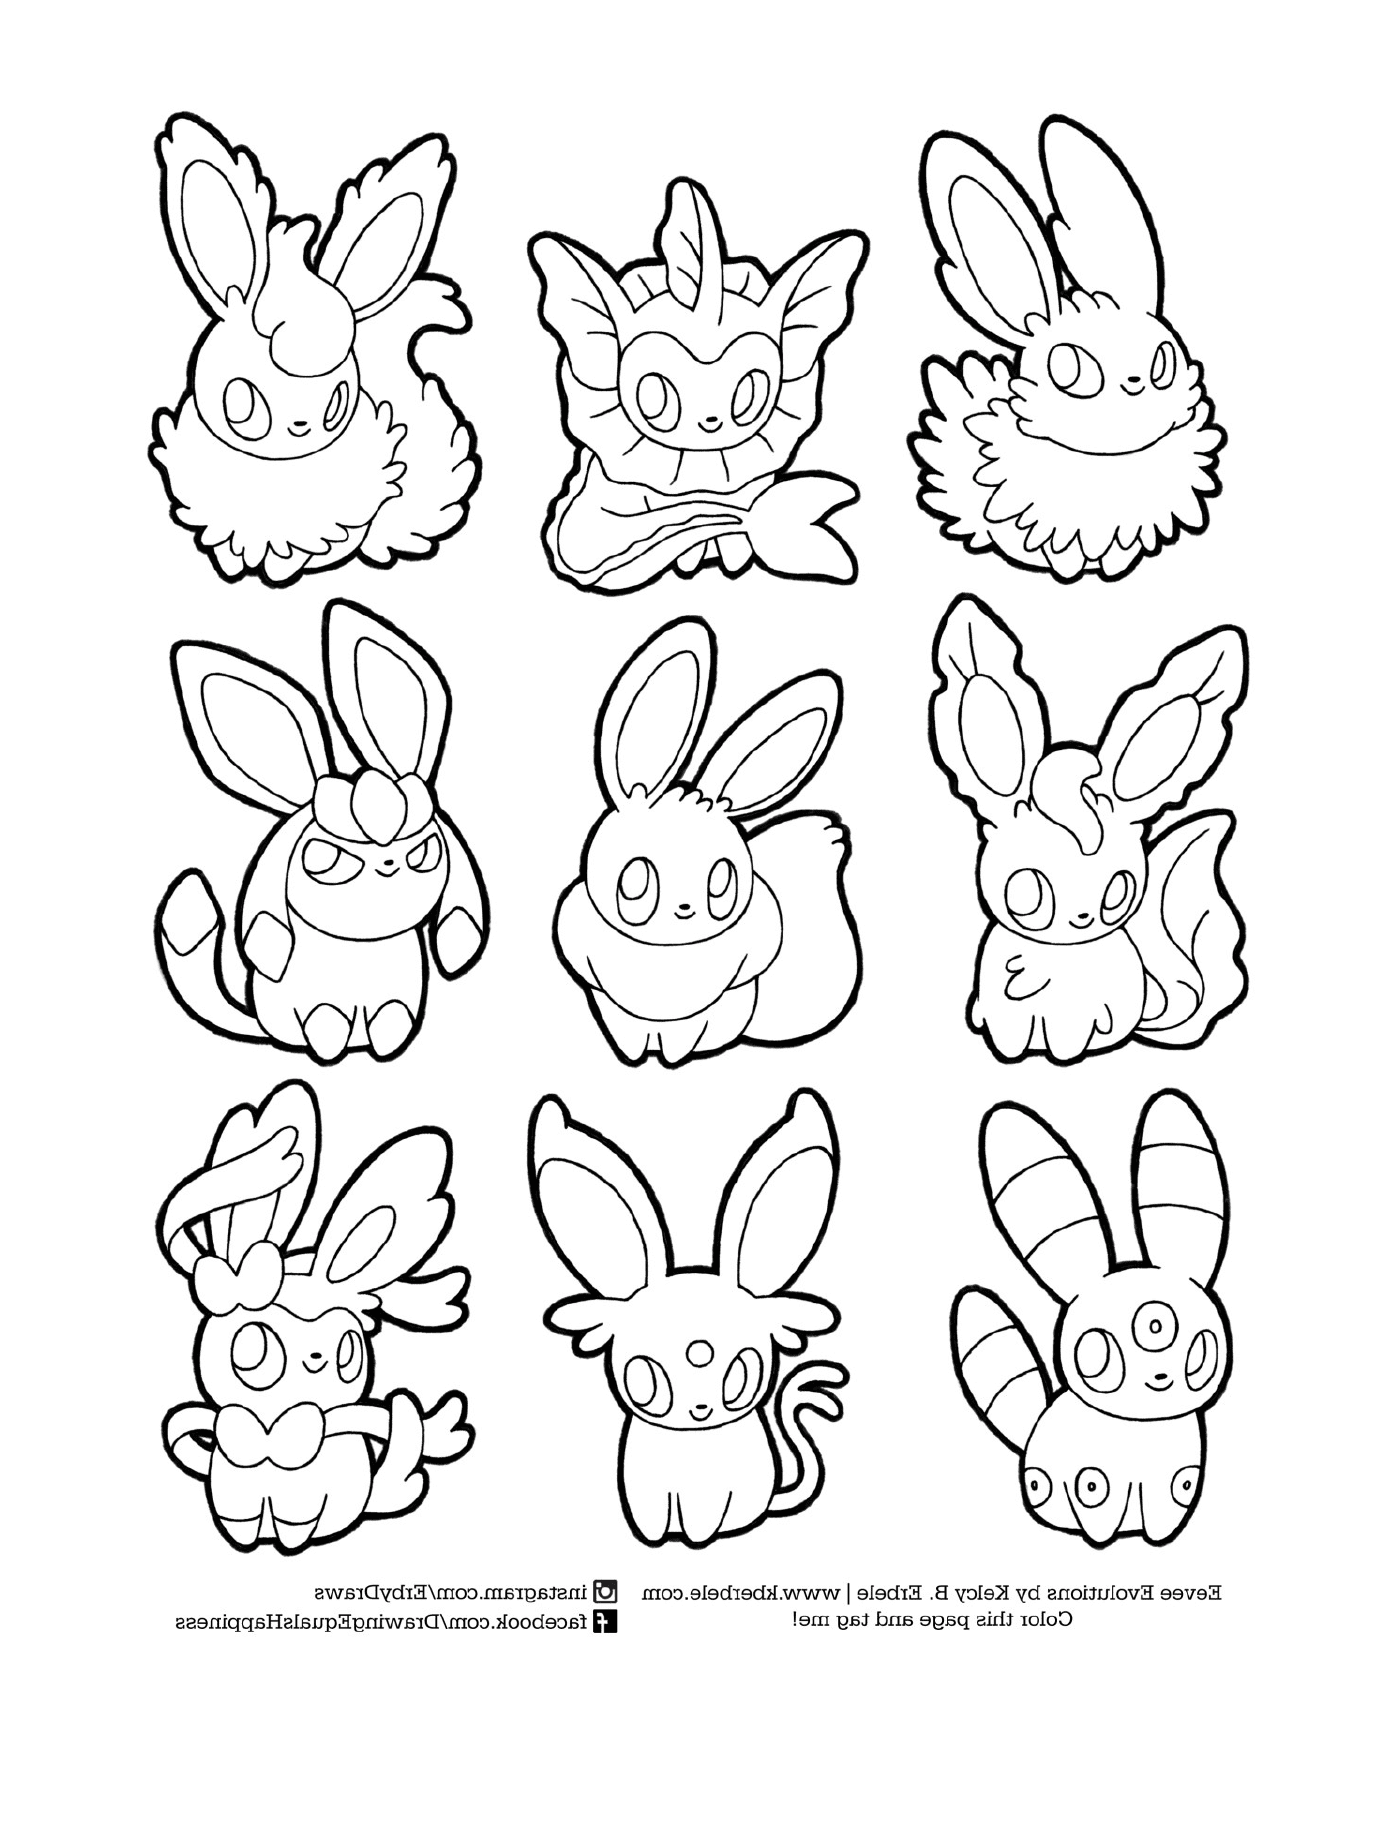  Evoluções de Evoli, conjunto de nove coelhos dos desenhos animados 